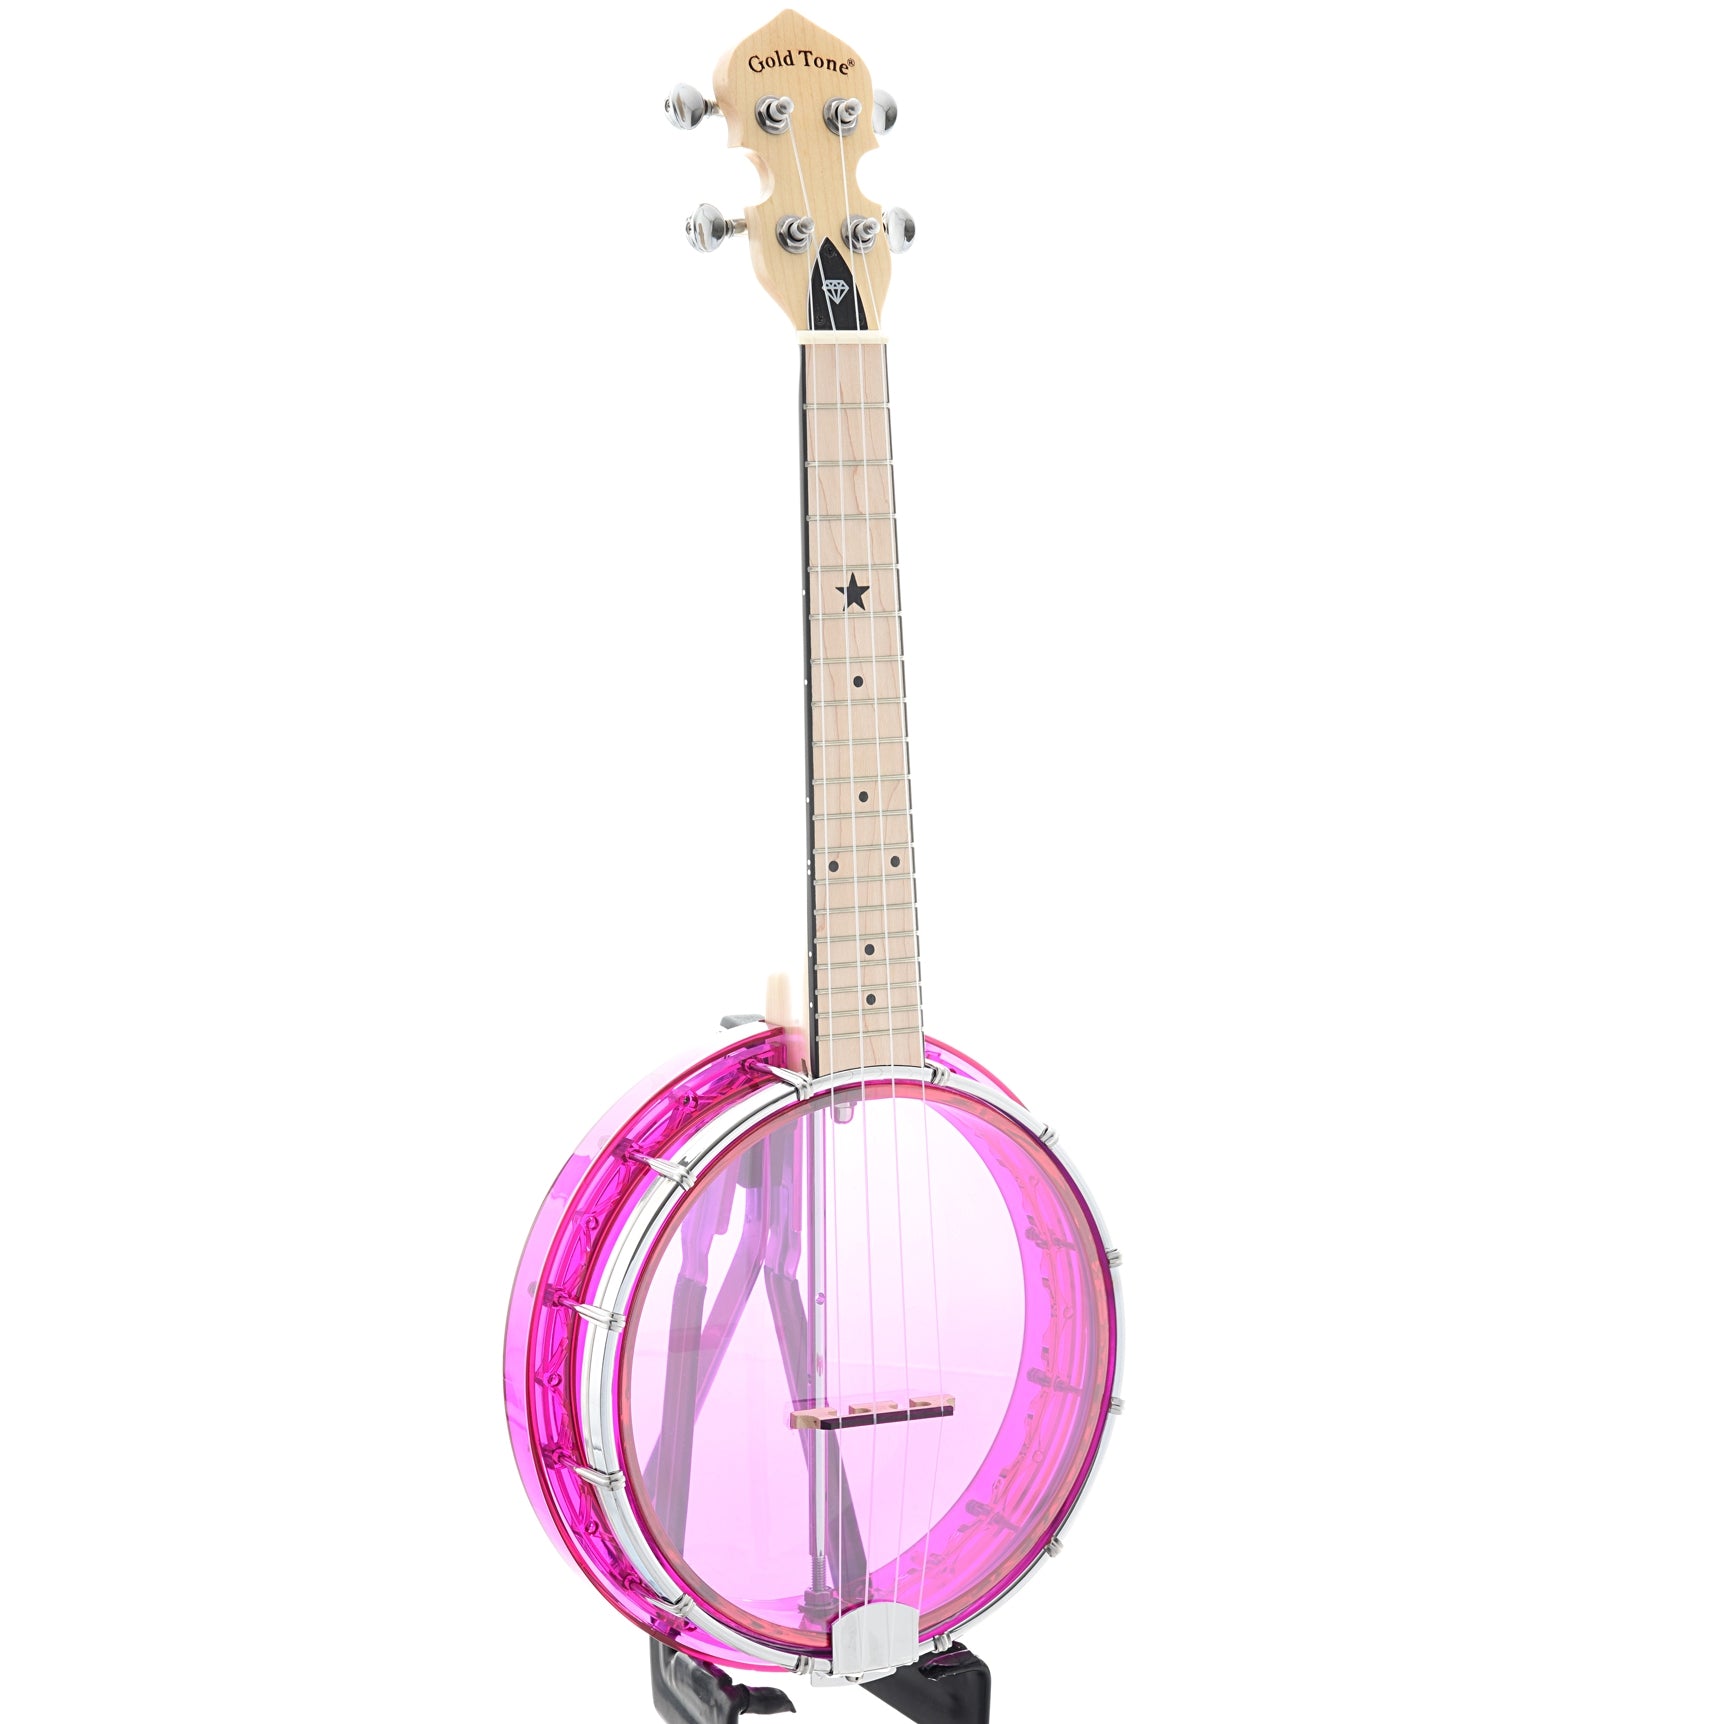 Image 2 of Gold Tone Little Gem Banjo Ukulele & Gigbag, Amethyst (purple) - SKU# LGEM-PUR : Product Type Banjo Ukuleles : Elderly Instruments